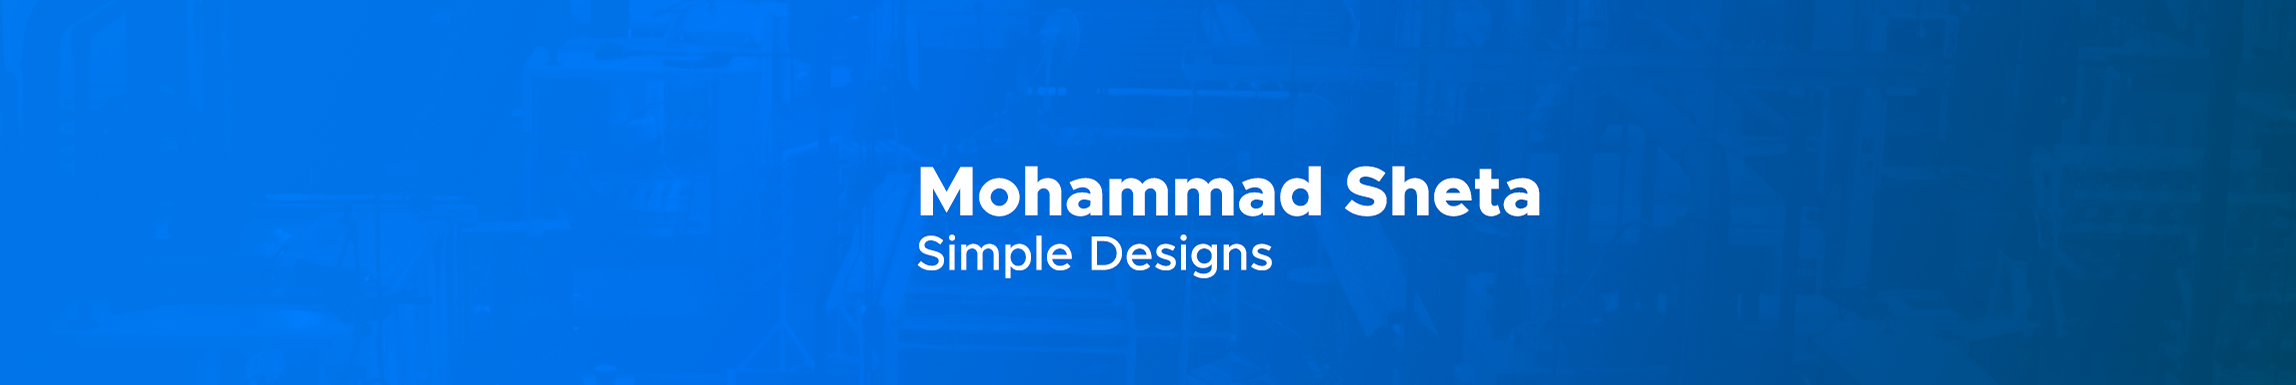 Mohamad Sheta's profile banner